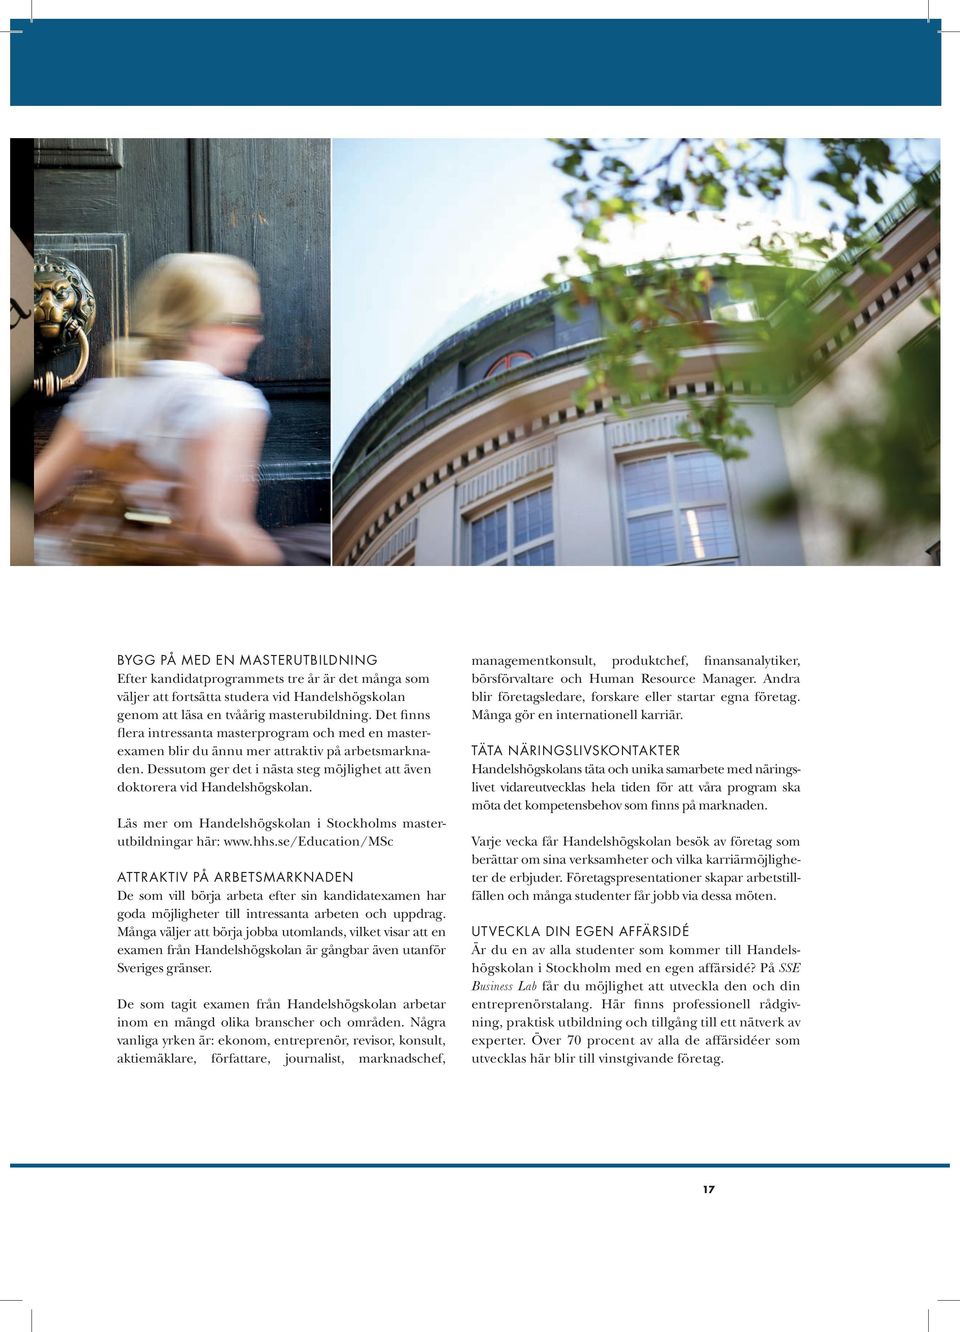 Läs mer om Handelshögskolan i Stockholms masterutbildningar här: www.hhs.